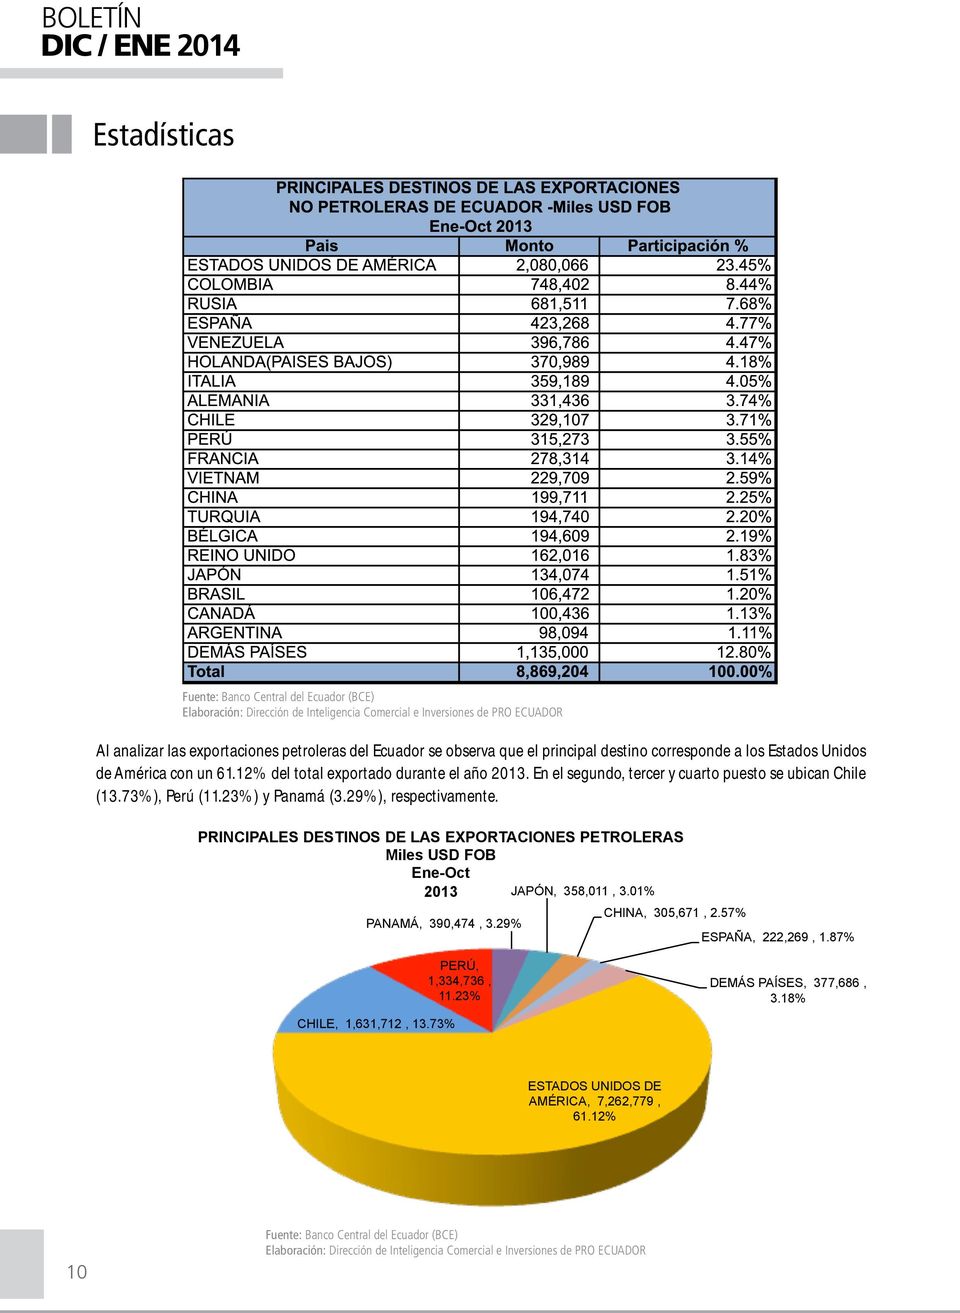 29%), respectivamente. PRINCIPALES DESTINOS DE LAS EXPORTACIONES PETROLERAS Miles USD FOB Ene-Oct 2013 JAPÓN, 358,011, 3.01% CHINA, 305,671, 2.